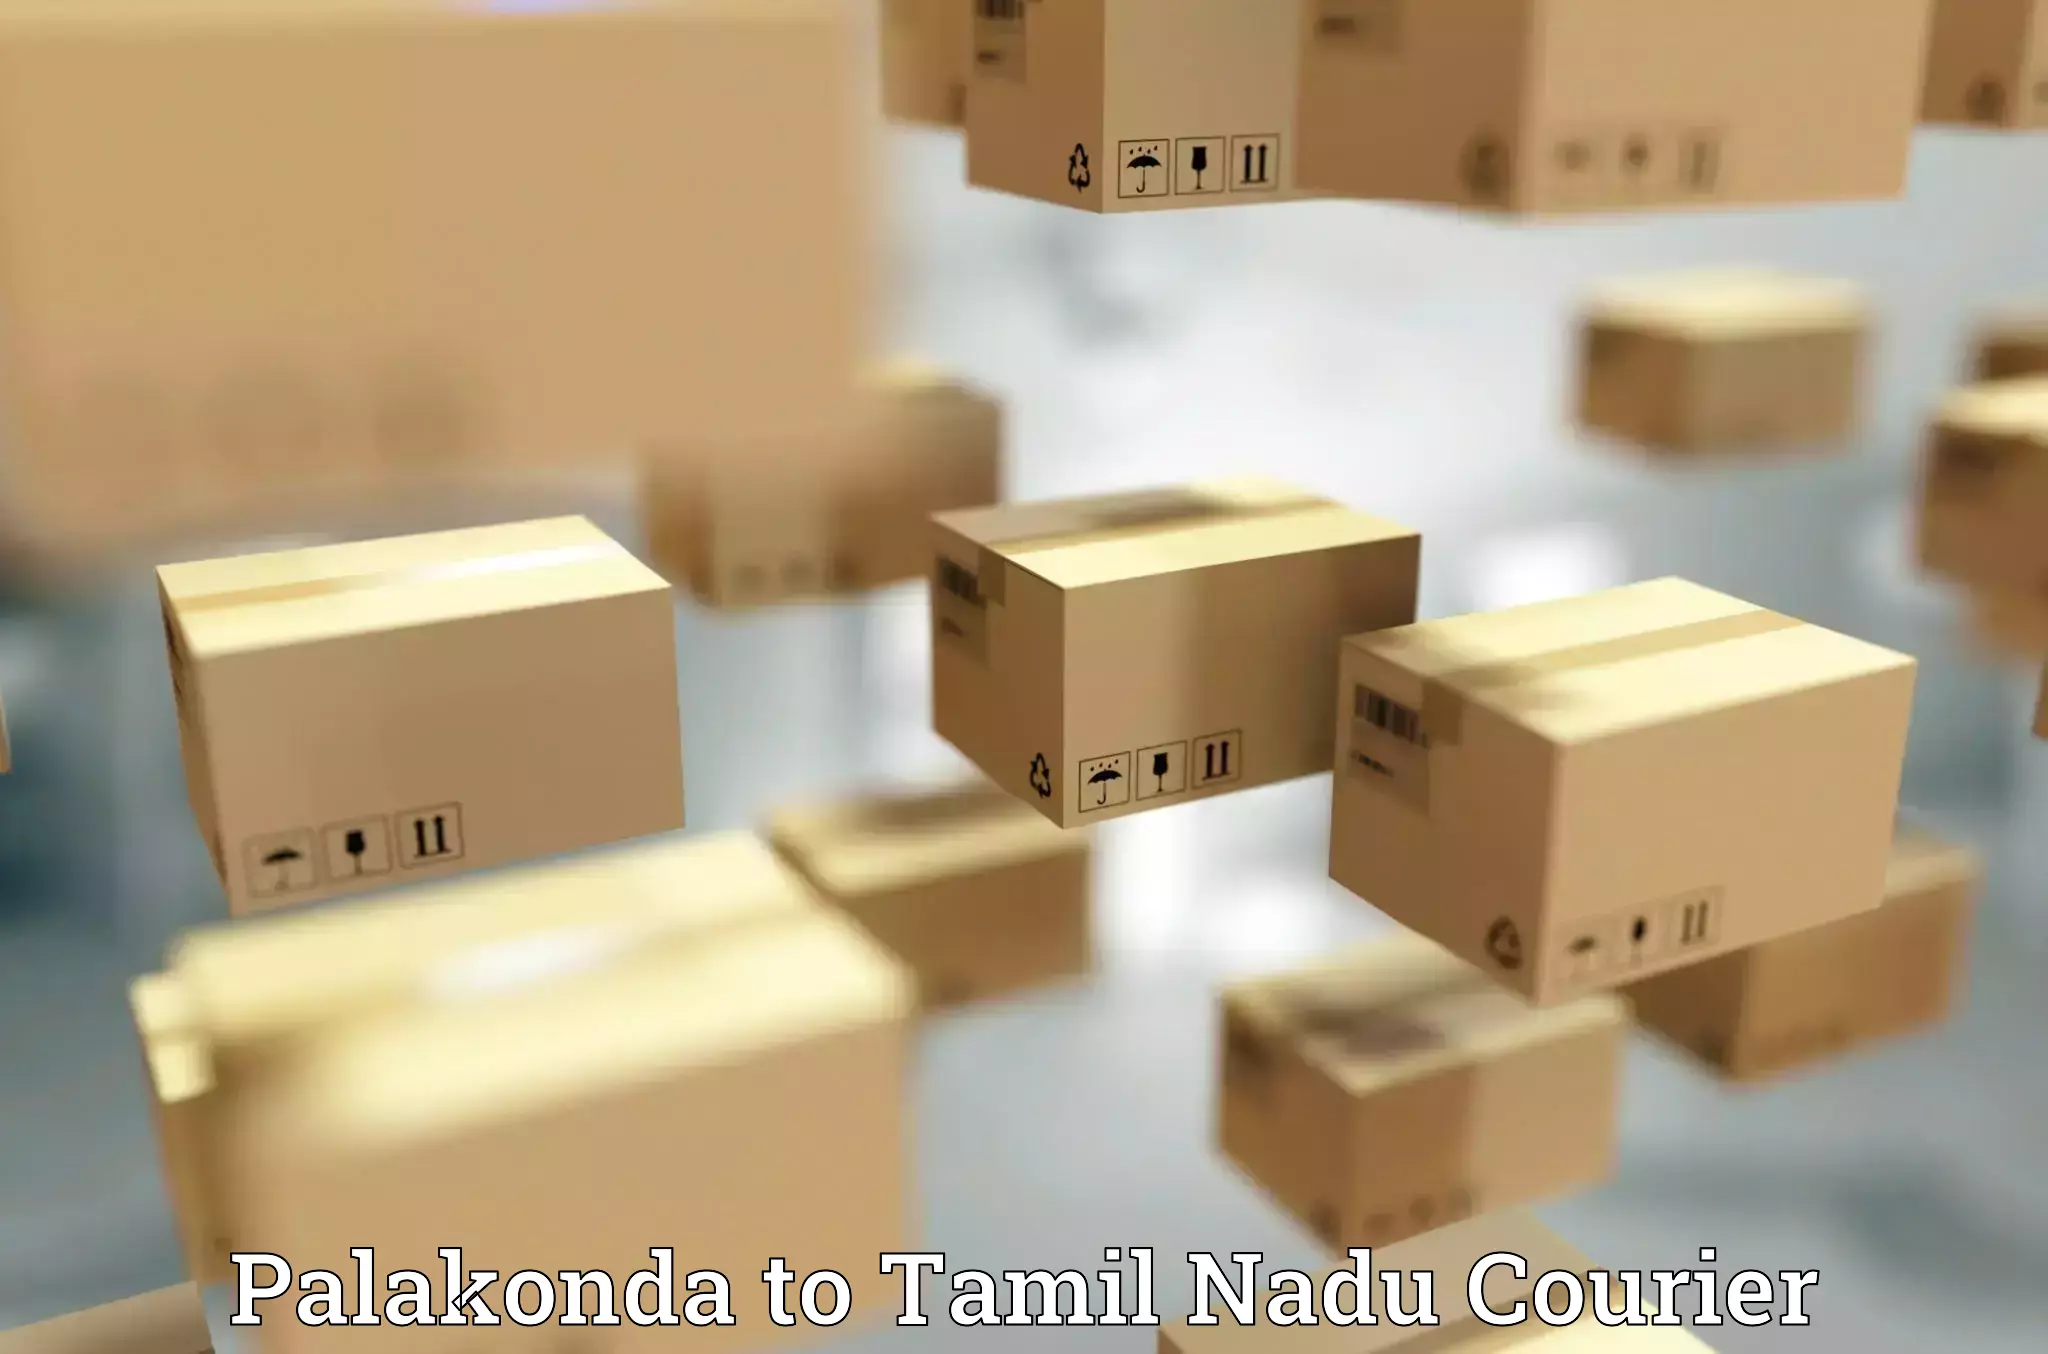 Trackable shipping service Palakonda to Thondi